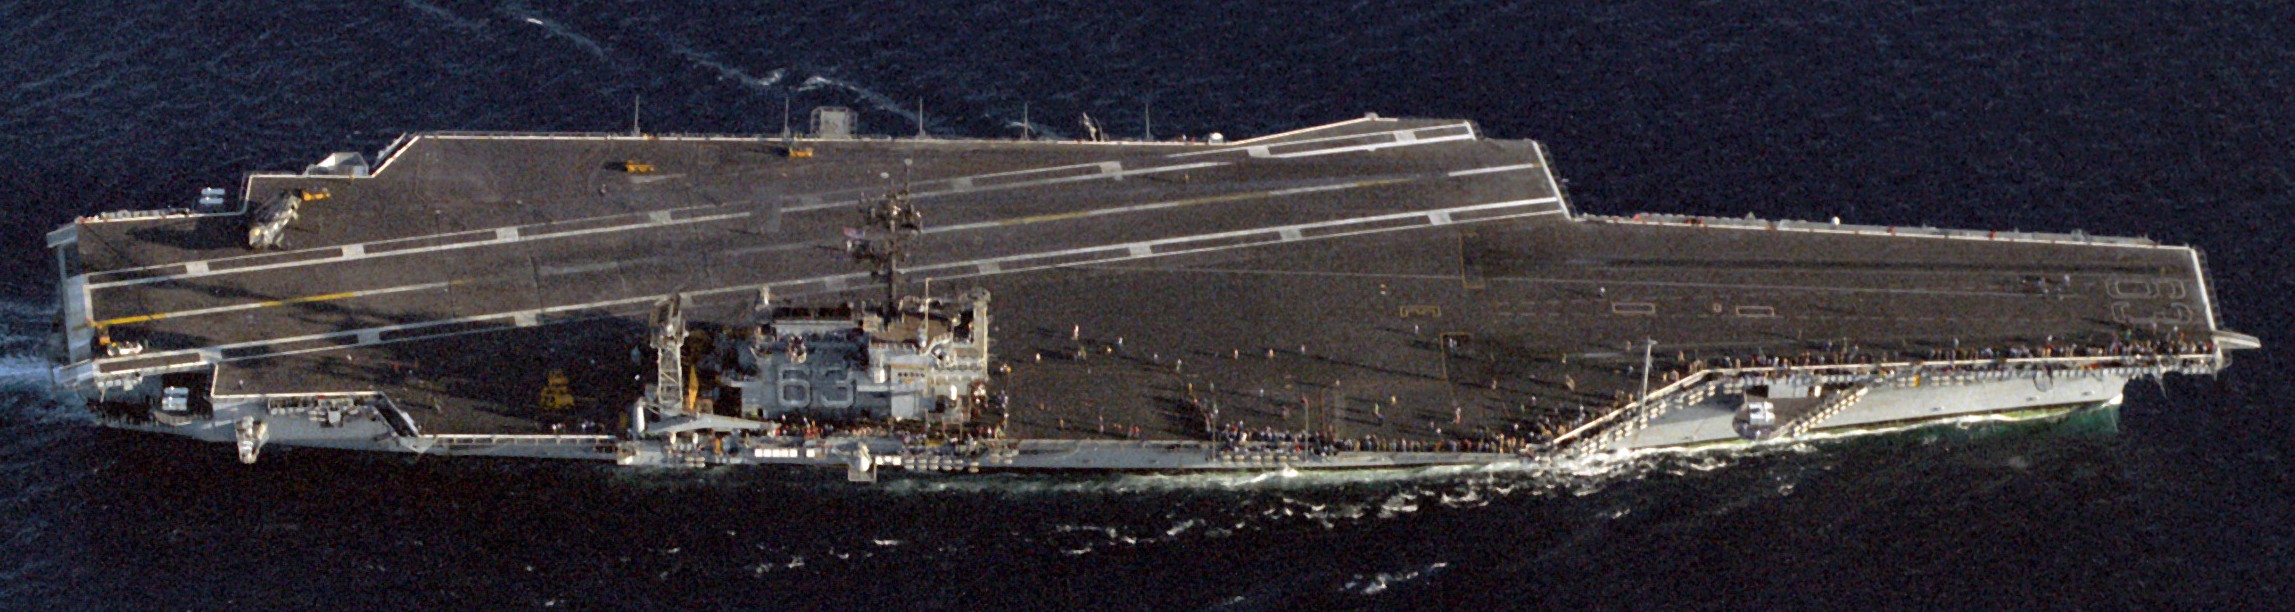 cv-63 uss kitty hawk aircraft carrier 461